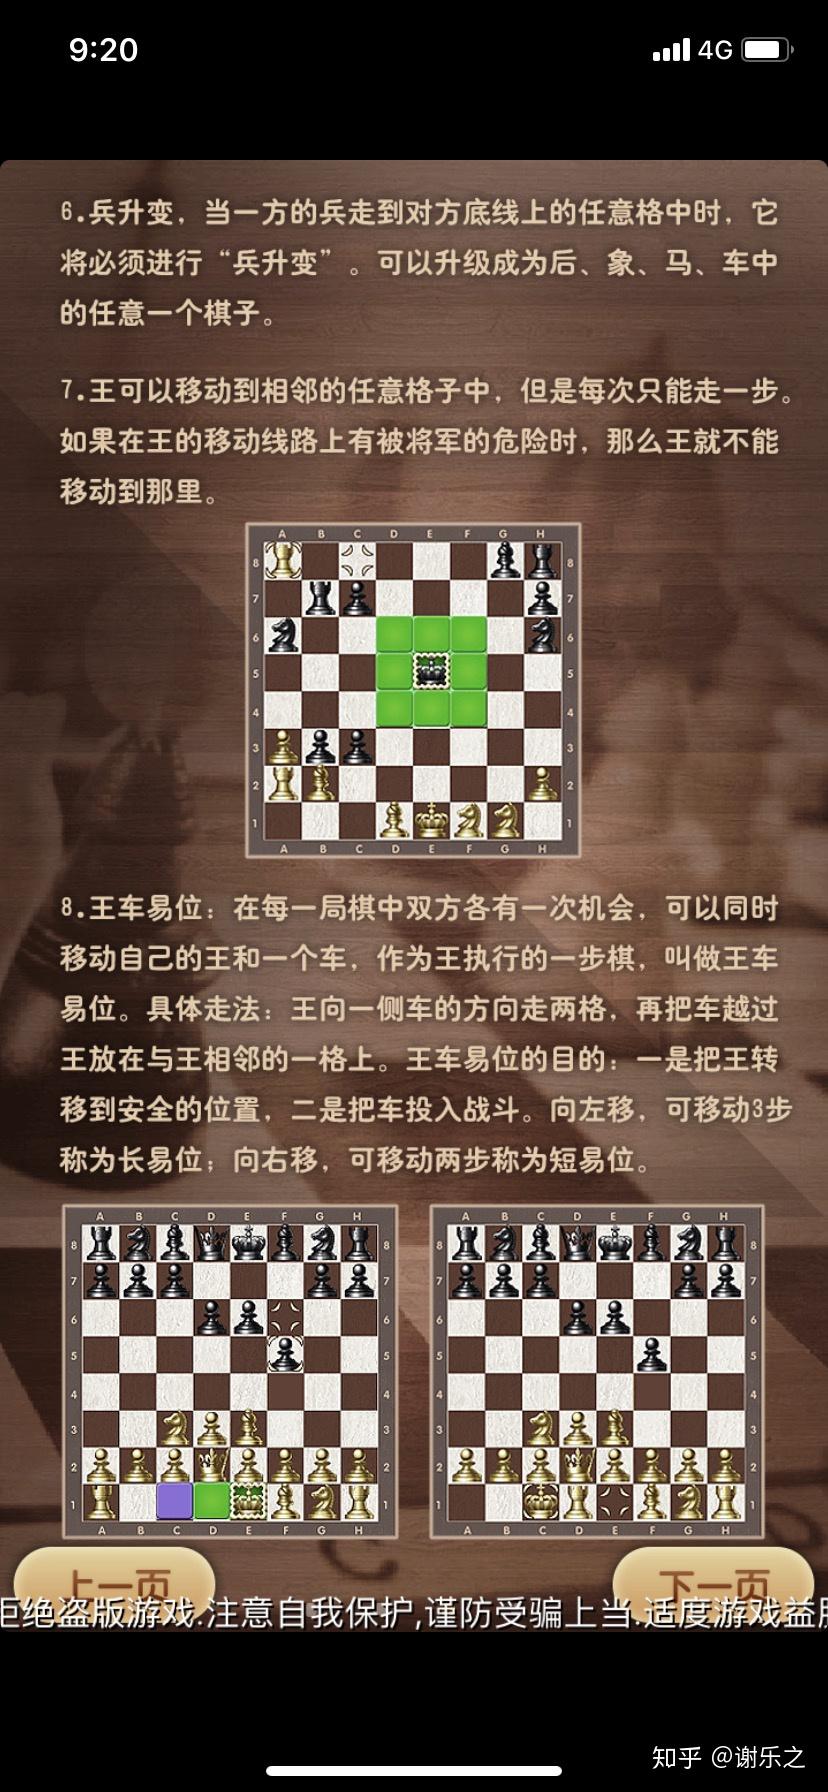 谁能介绍一下国际象棋的基本规则和走法,还有基本战术? 